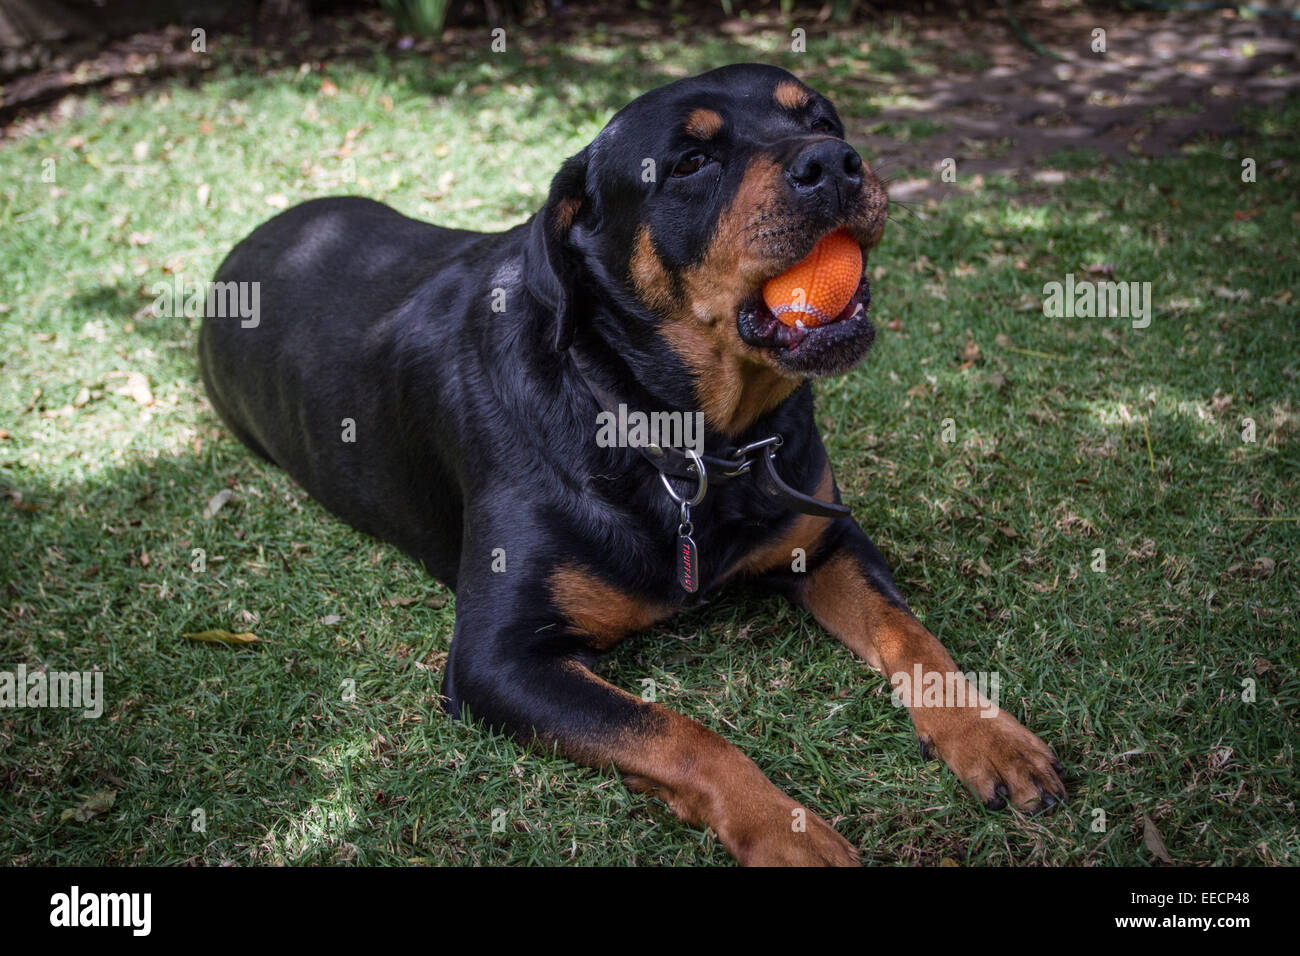 Bella di pura razza Rottweiler cane sta giocando con una palla di gomma nel giardino in un giorno di estate Foto Stock